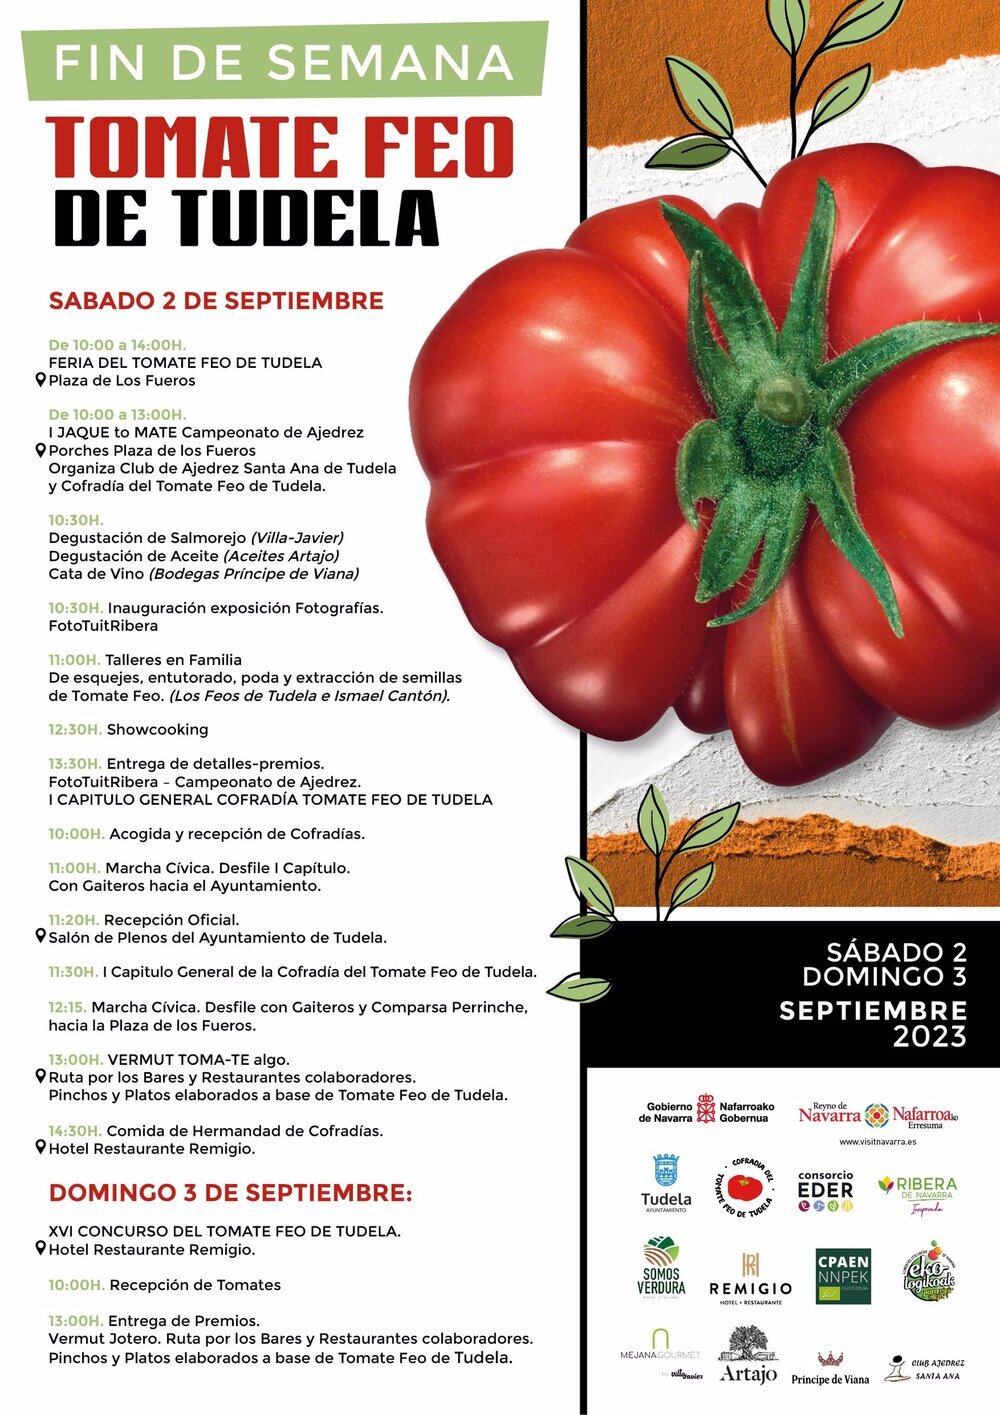 Cartel de la Feria del Tomate Feo de Tudela